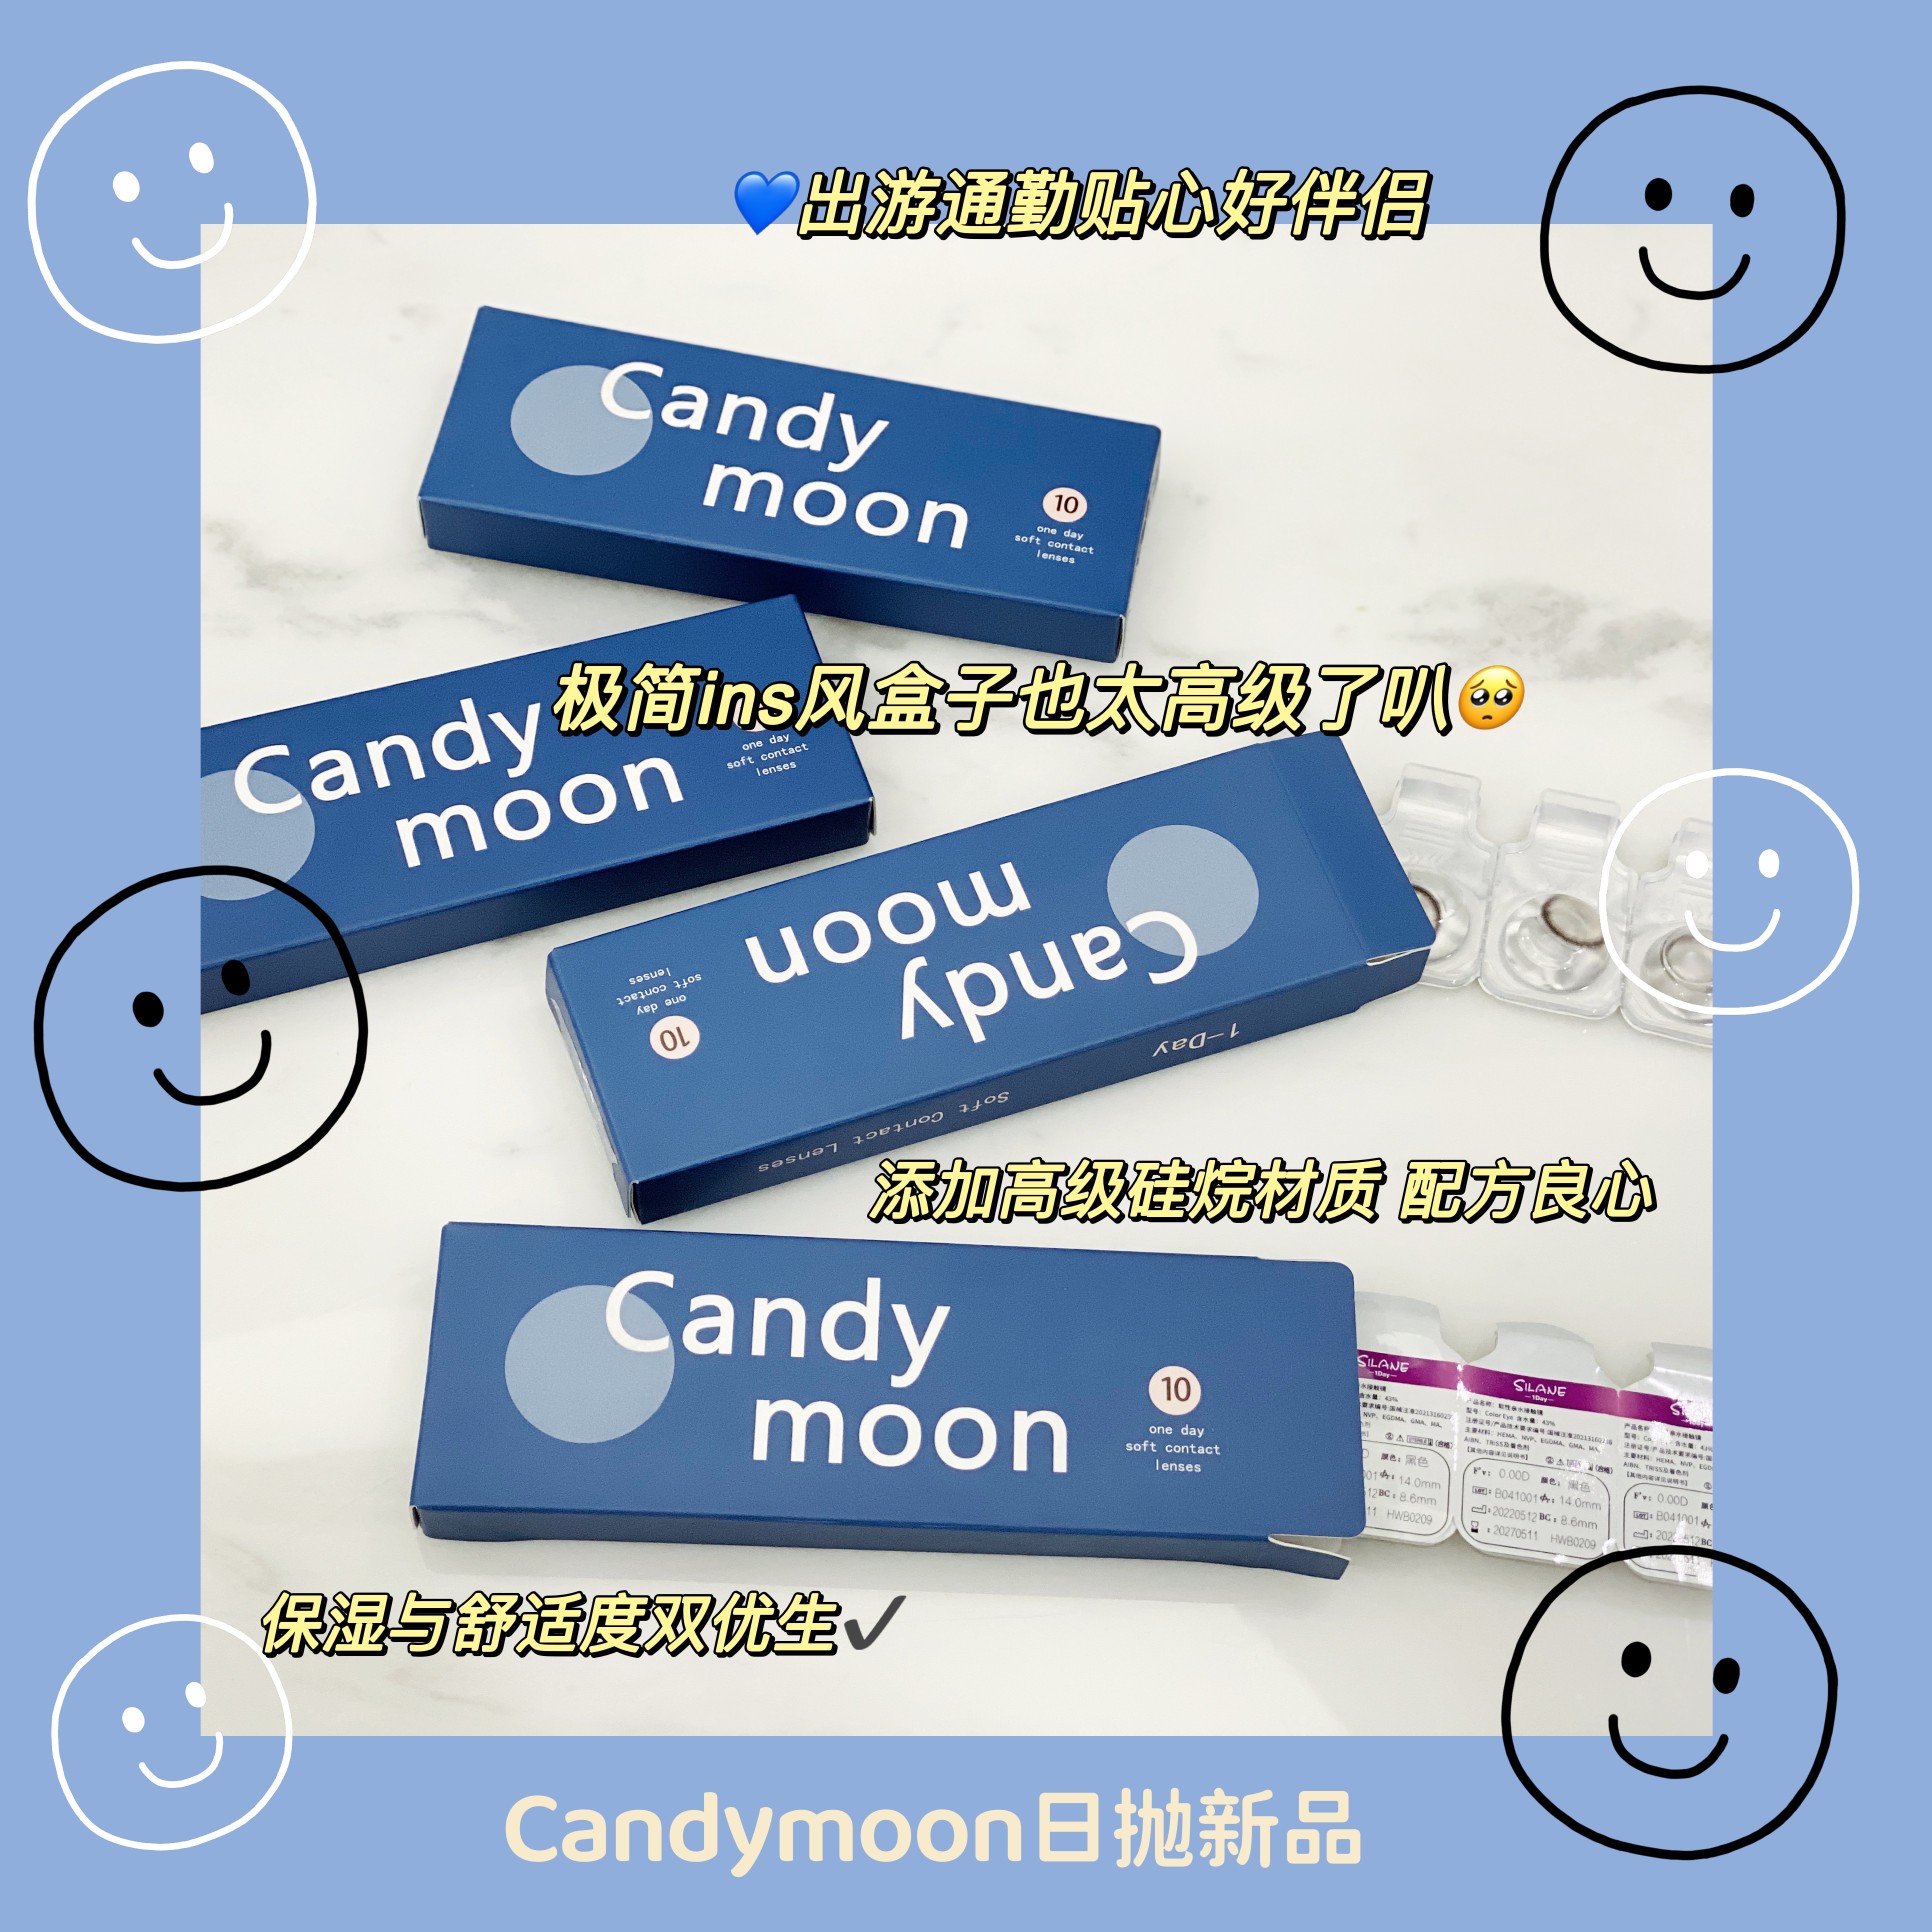 【日抛上新】Candymoon  日抛又上新啦！ - VVCON美瞳网